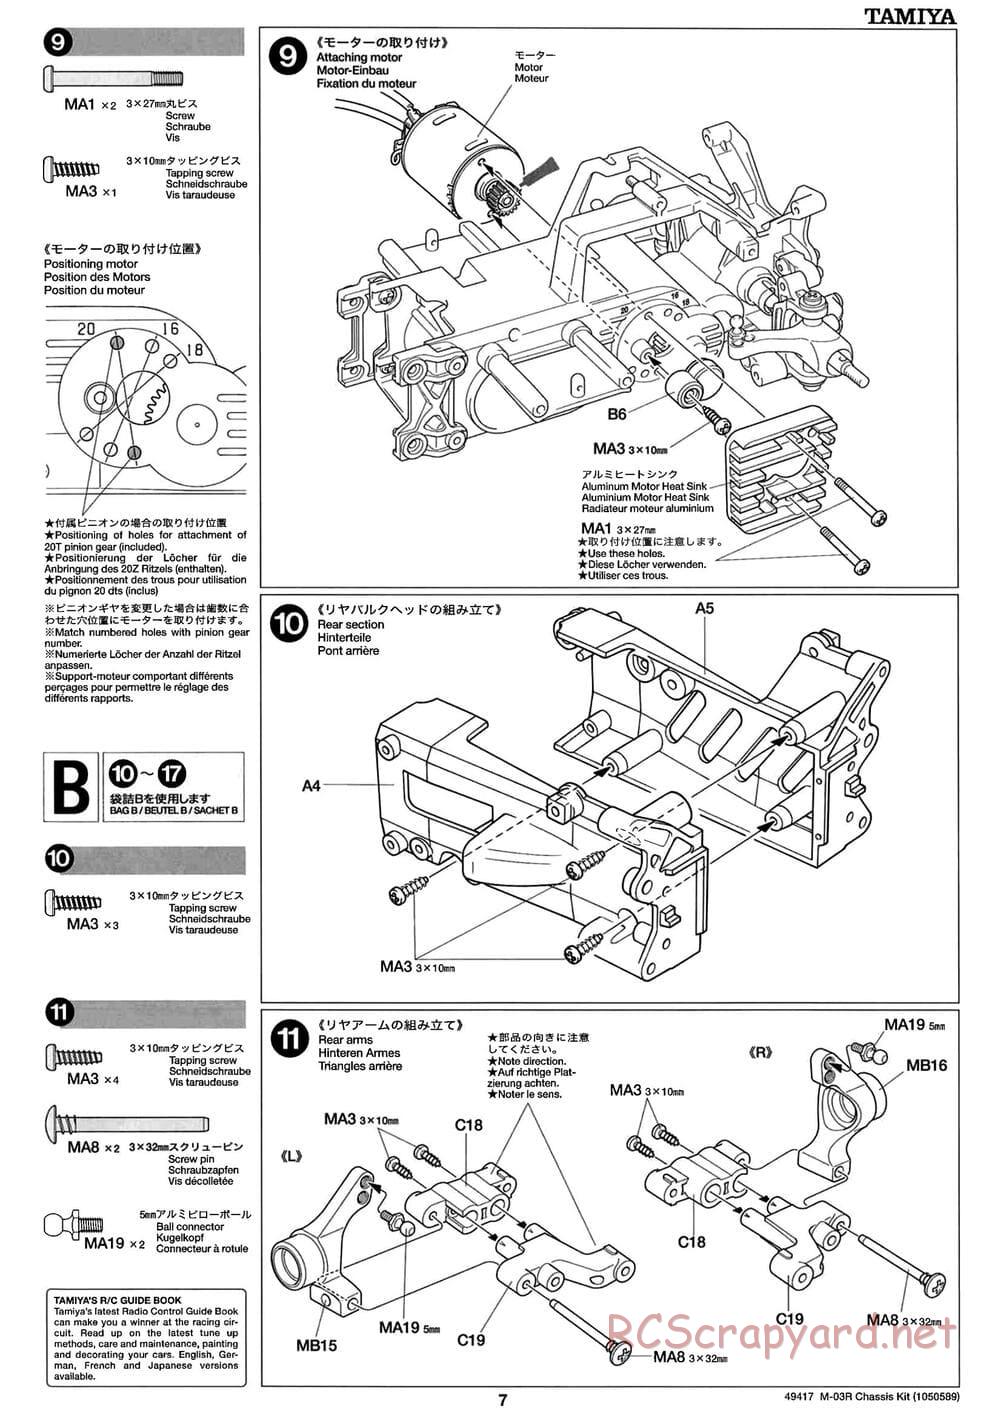 Tamiya - M-03R Chassis - Manual - Page 7